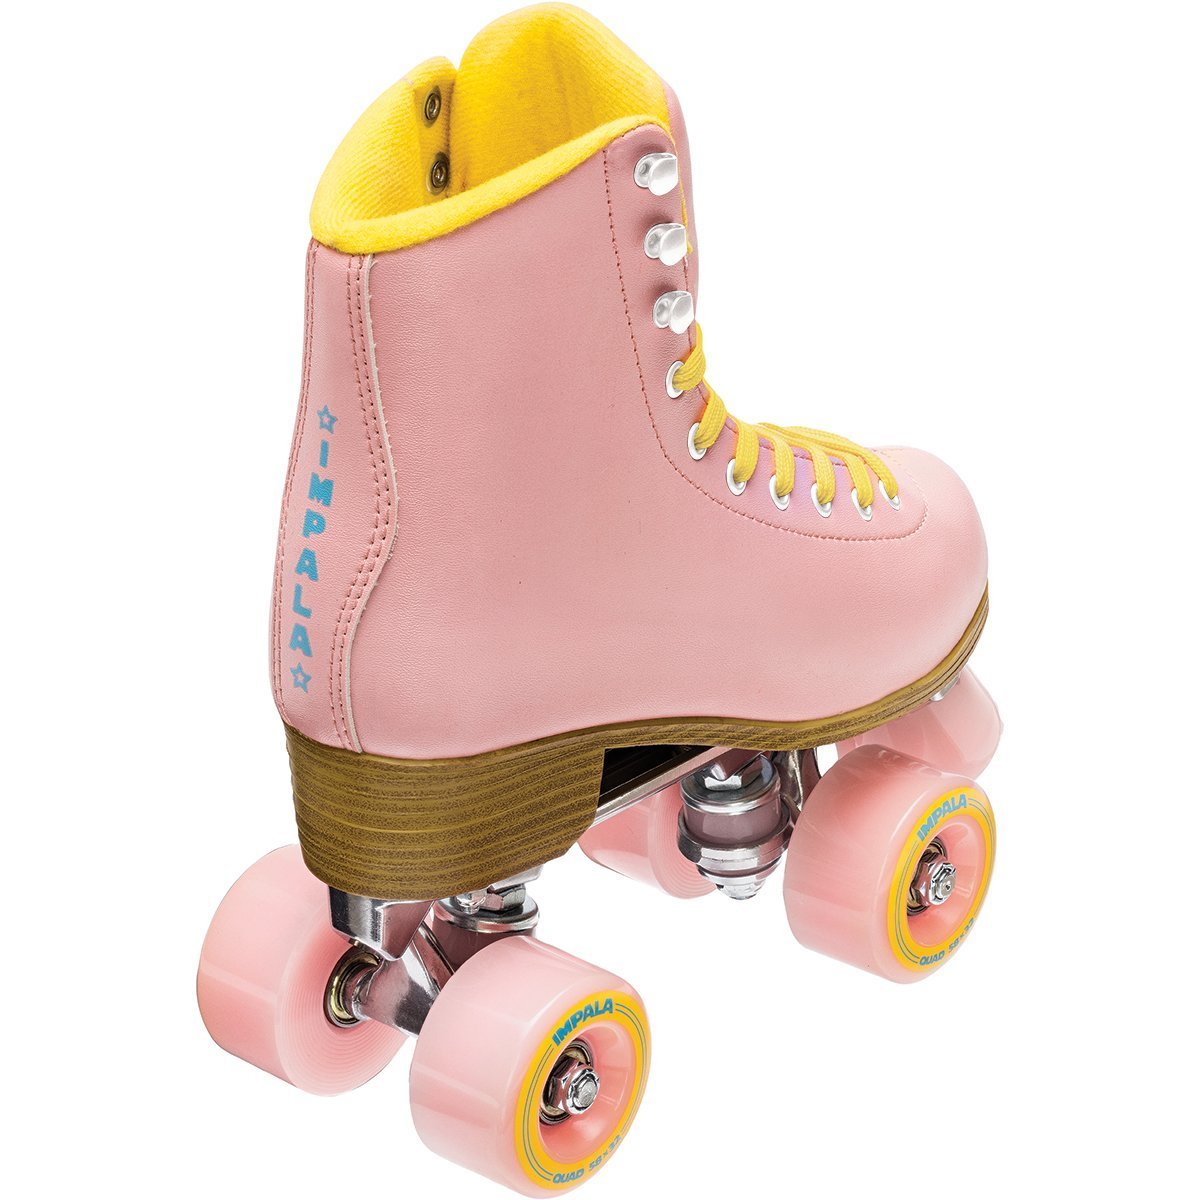 Impala Roller Skate Pink - Doberman's Skate Shop - Doberman's Skate Shop